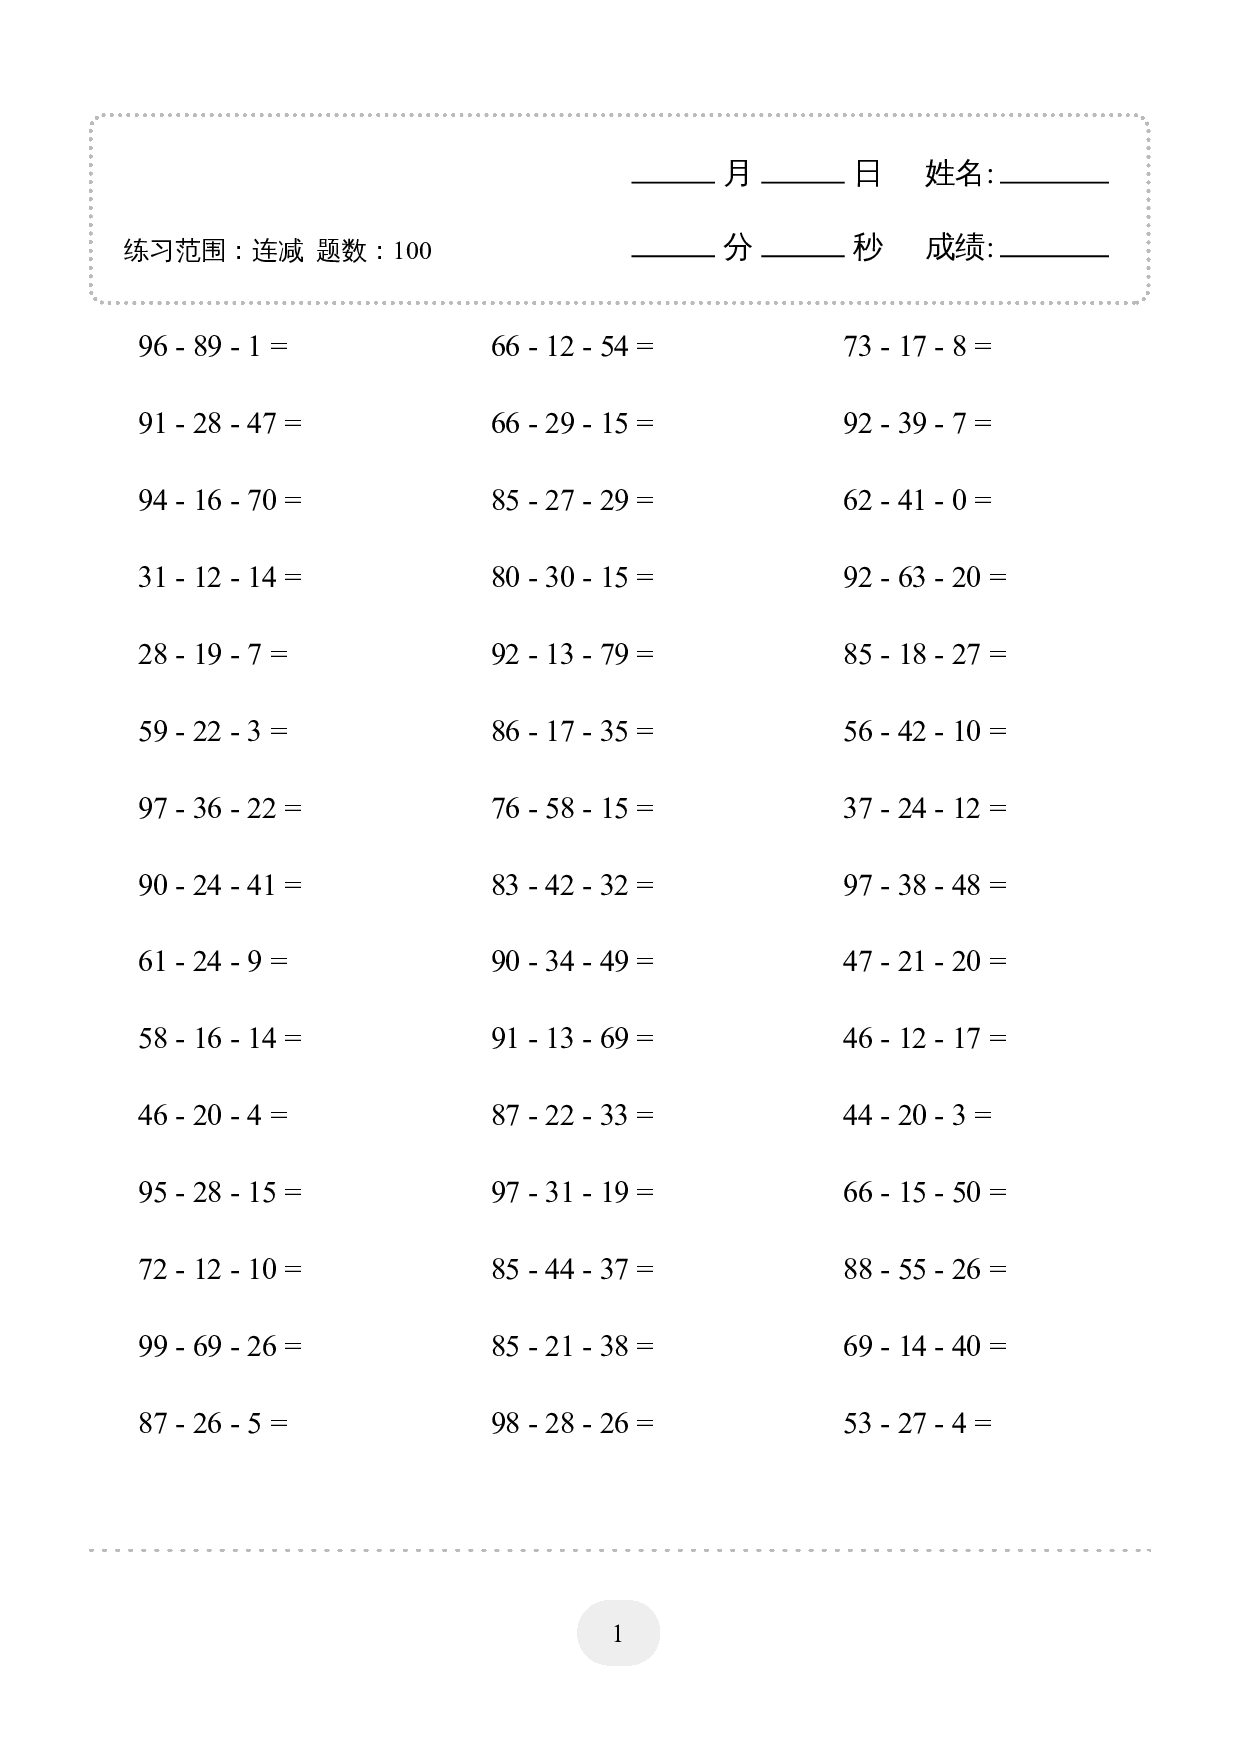 2年级上册数学口算题 (连减) 1000题